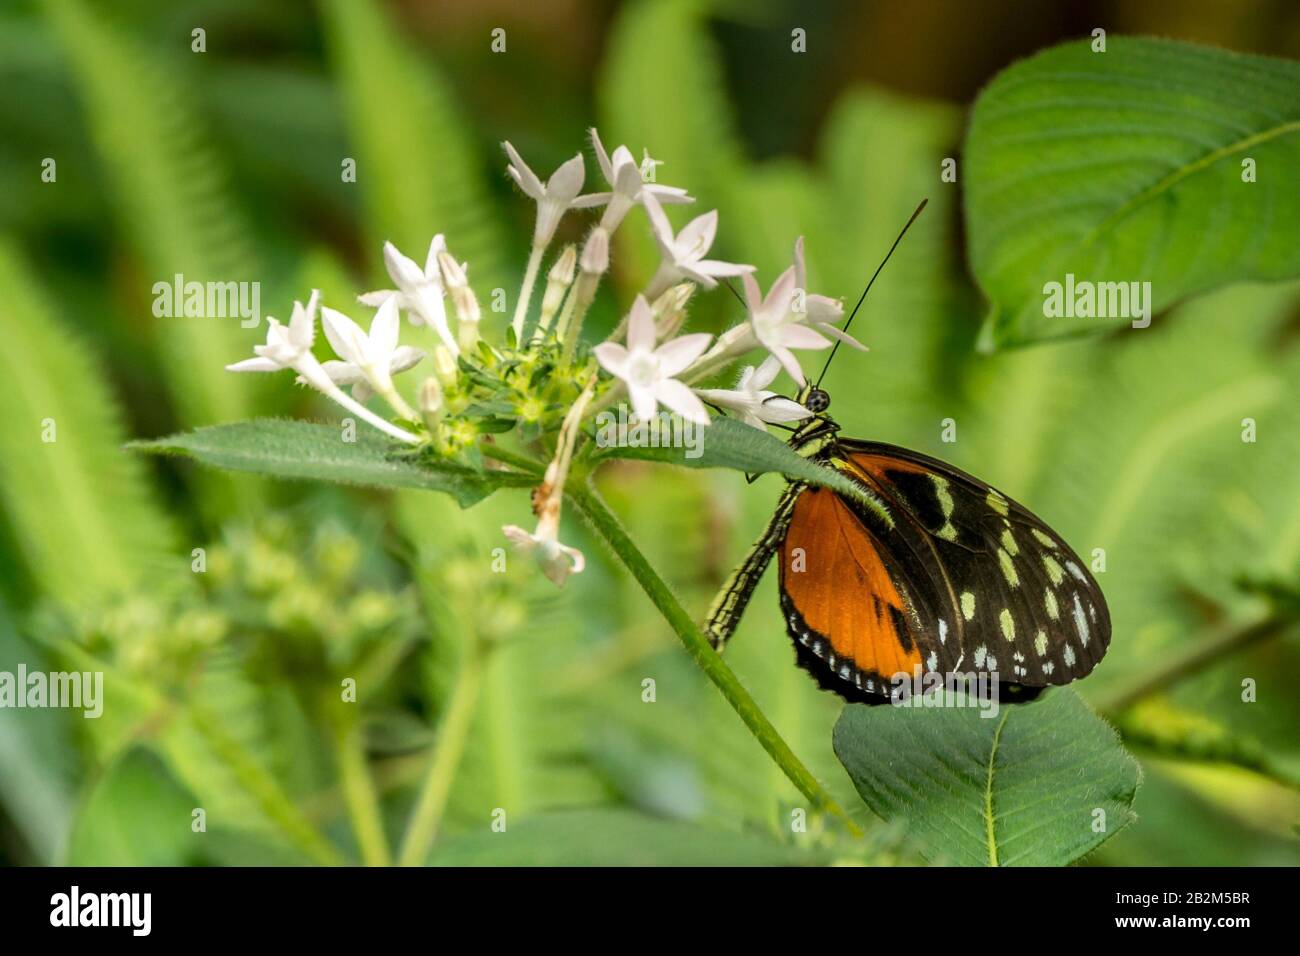 Isola Di Mainau, Lago Di Costanza, Germania - 11 Set. 2015: Giardini botanici dell'isola di Mainau, l'insenatura sul lago di Costanza, mangiare alle farfalle Foto Stock